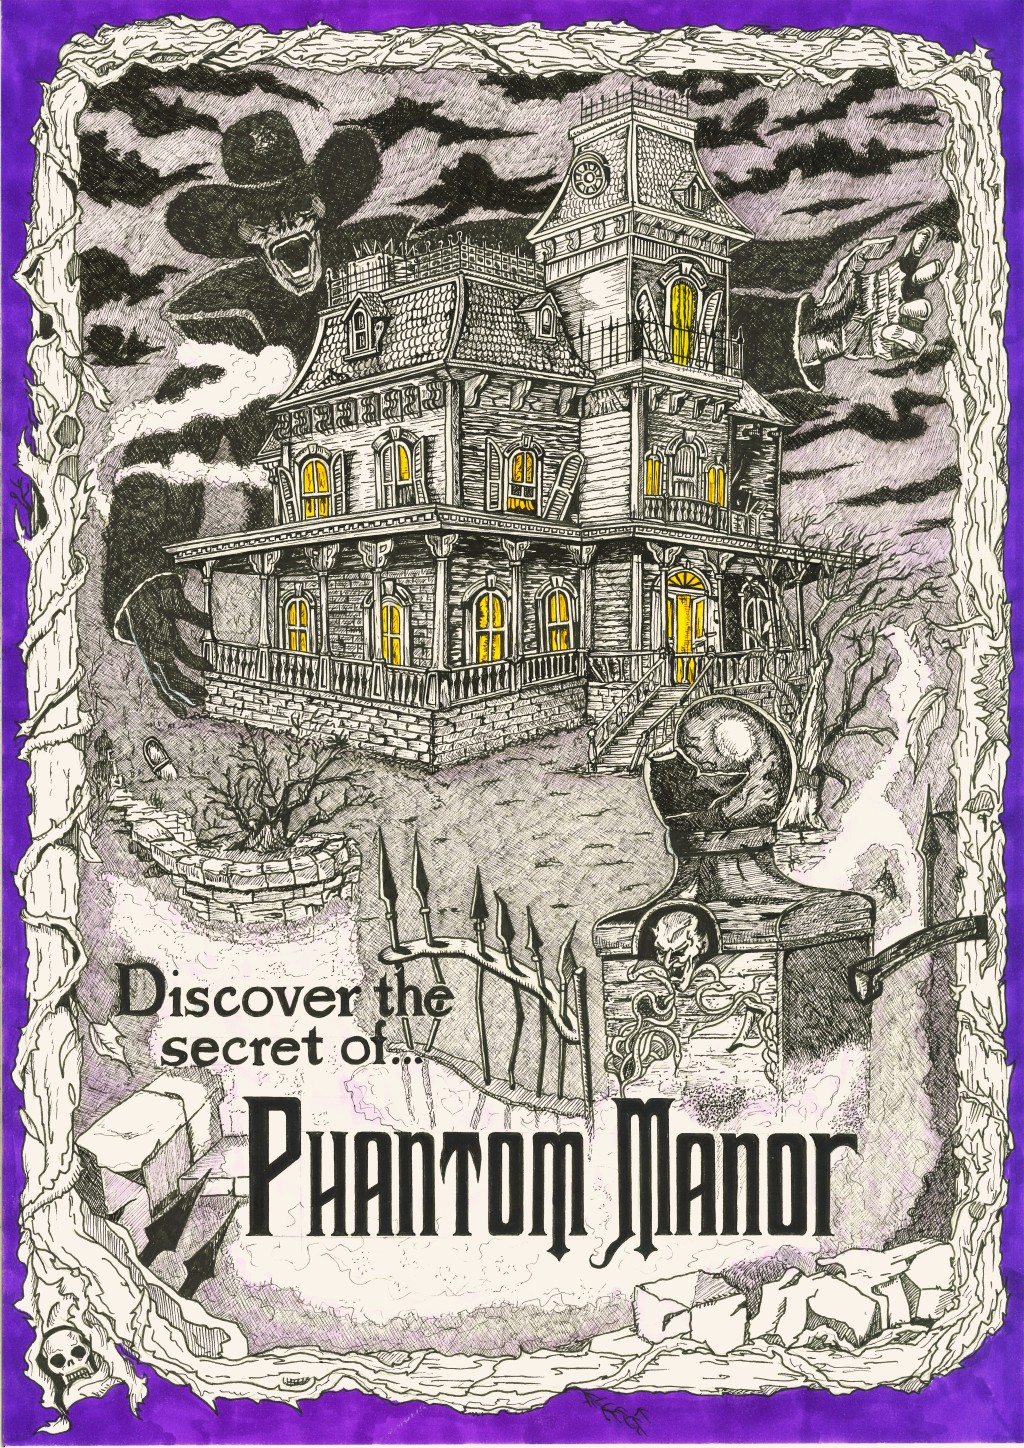 Speciale locandine: The Phantom Manor!